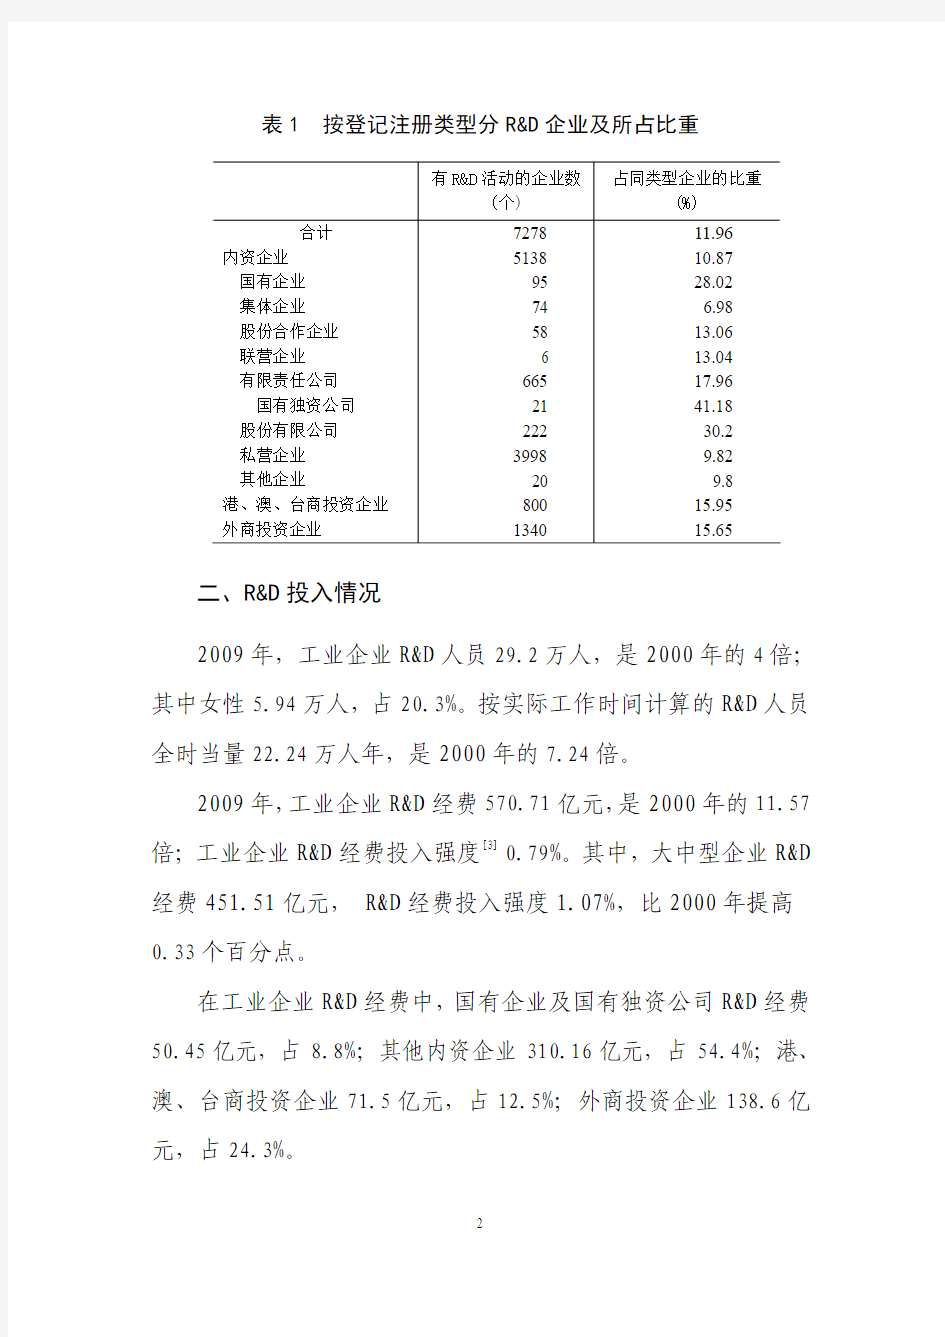 第二次江苏省R&D资源清查主要数据公报(2号)